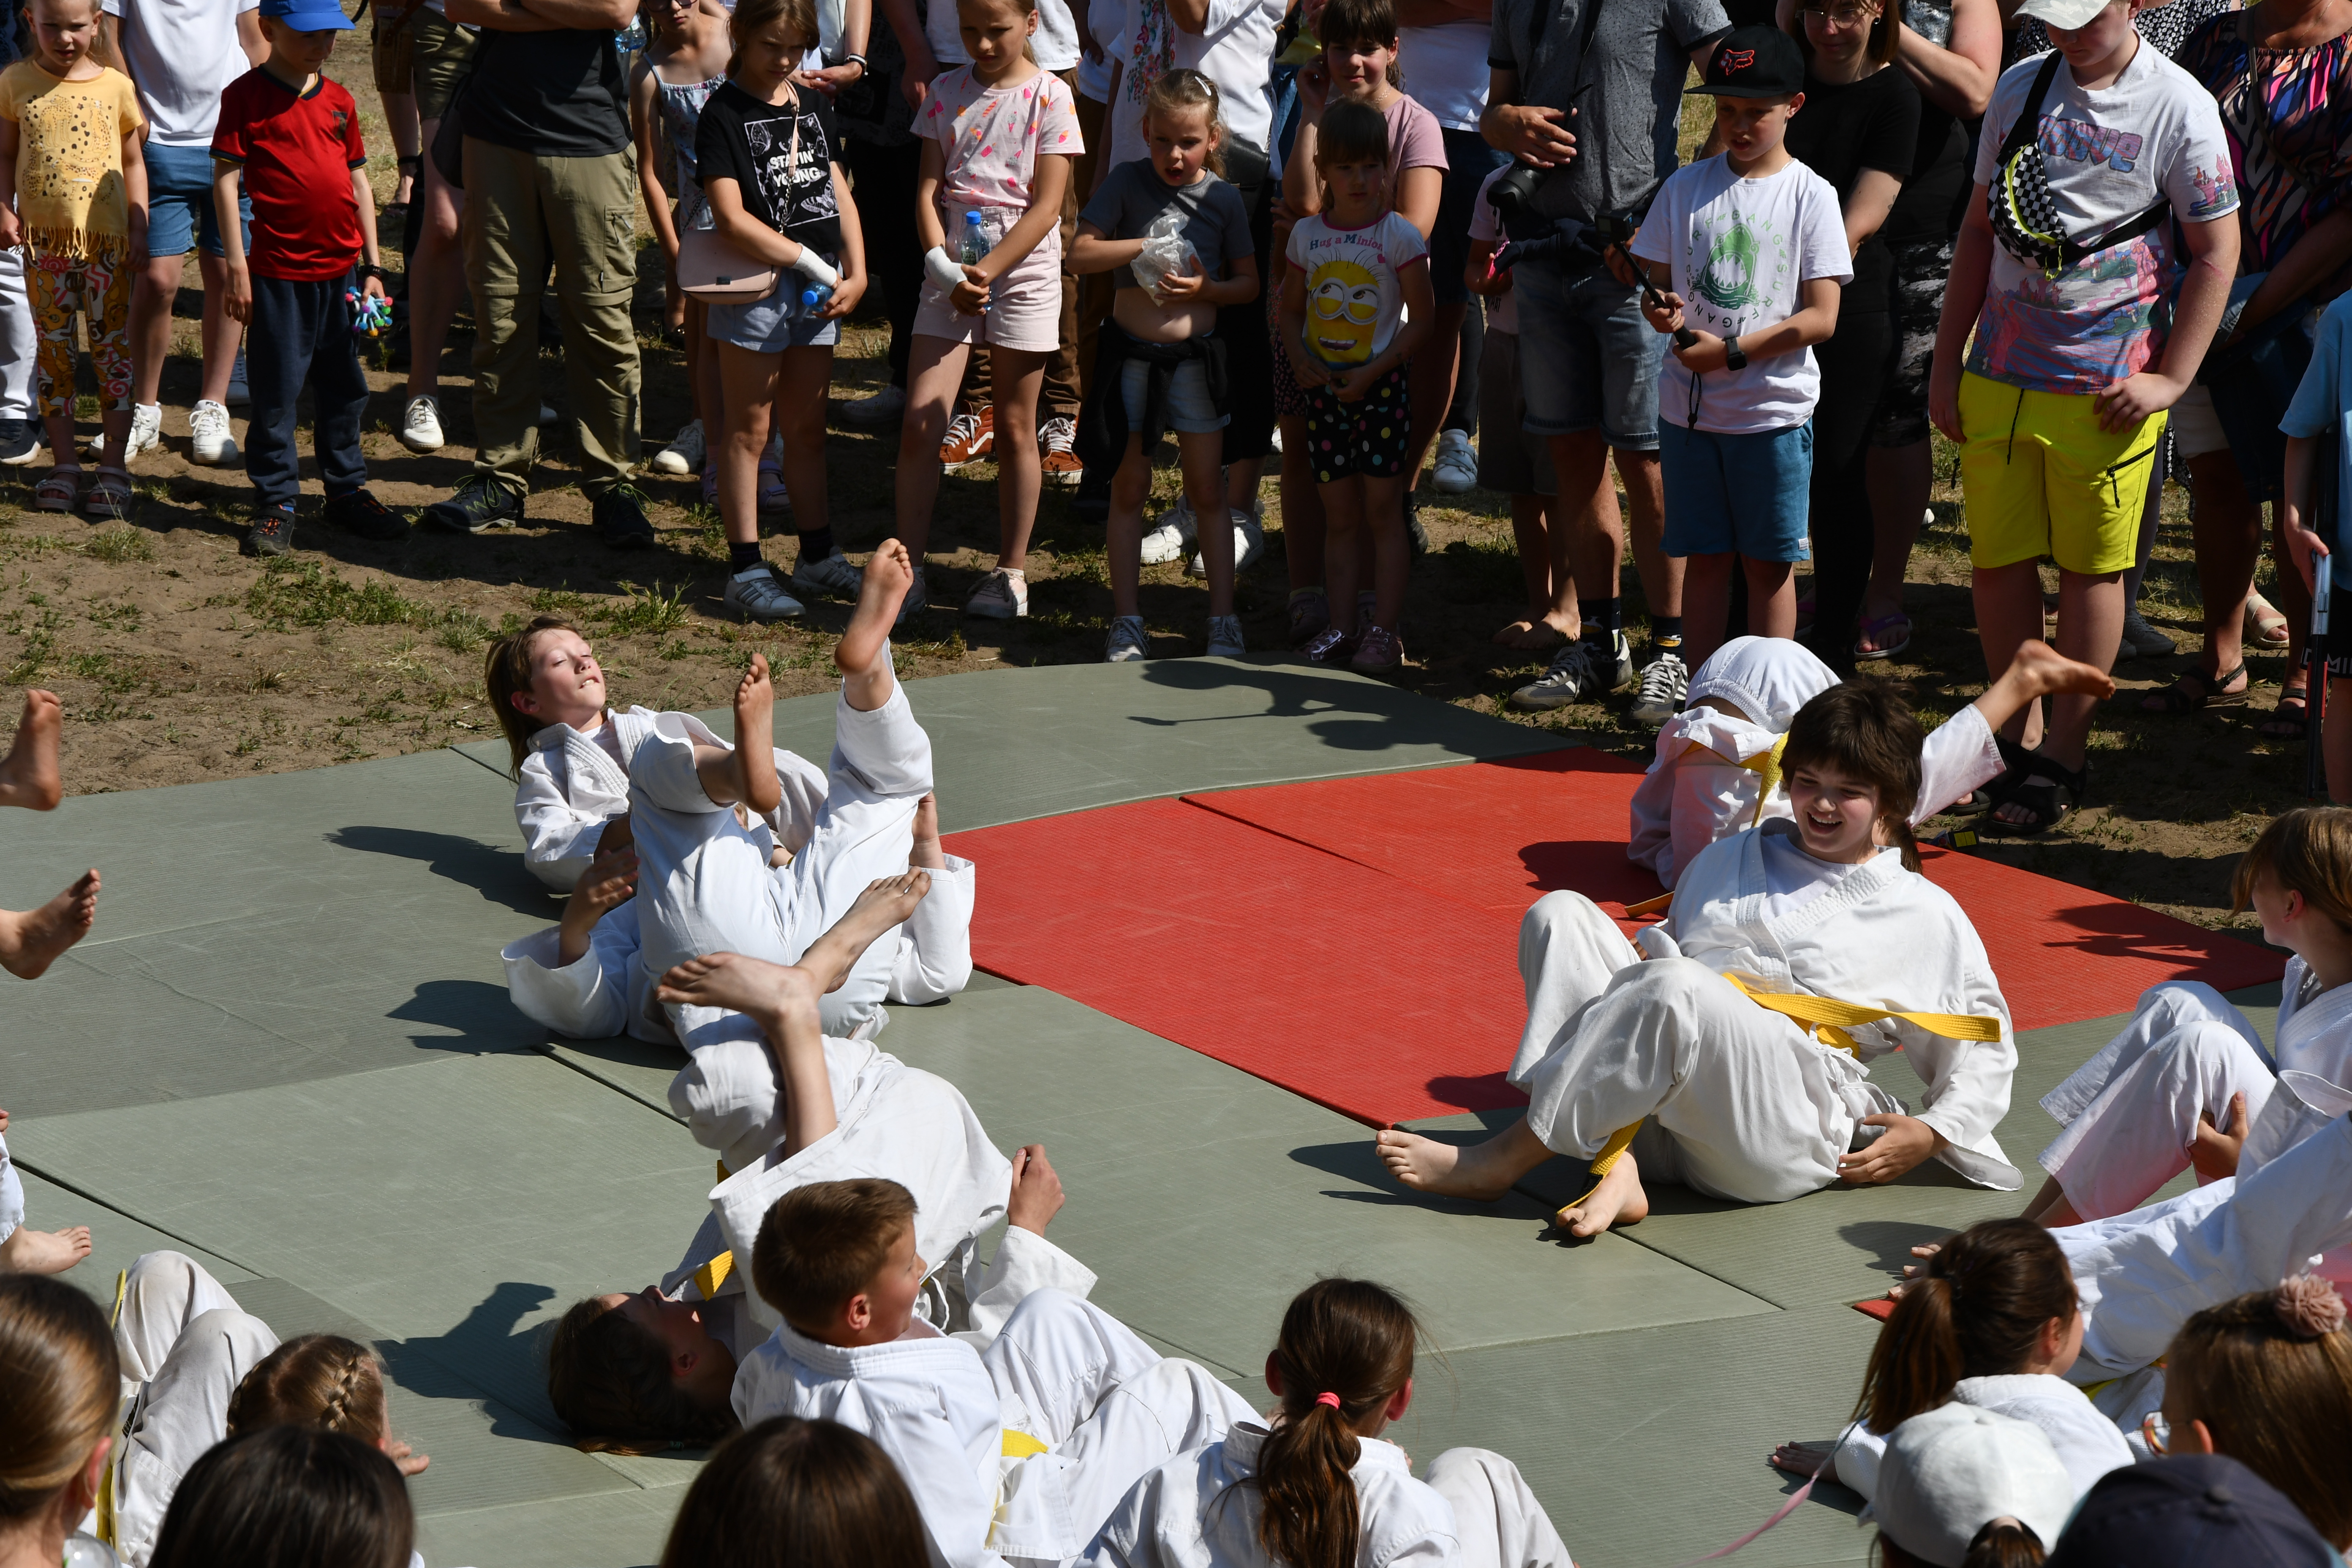 Sekcja judo pokazująca na matach rozgrzewkę poprzez rzucanie się na matę.